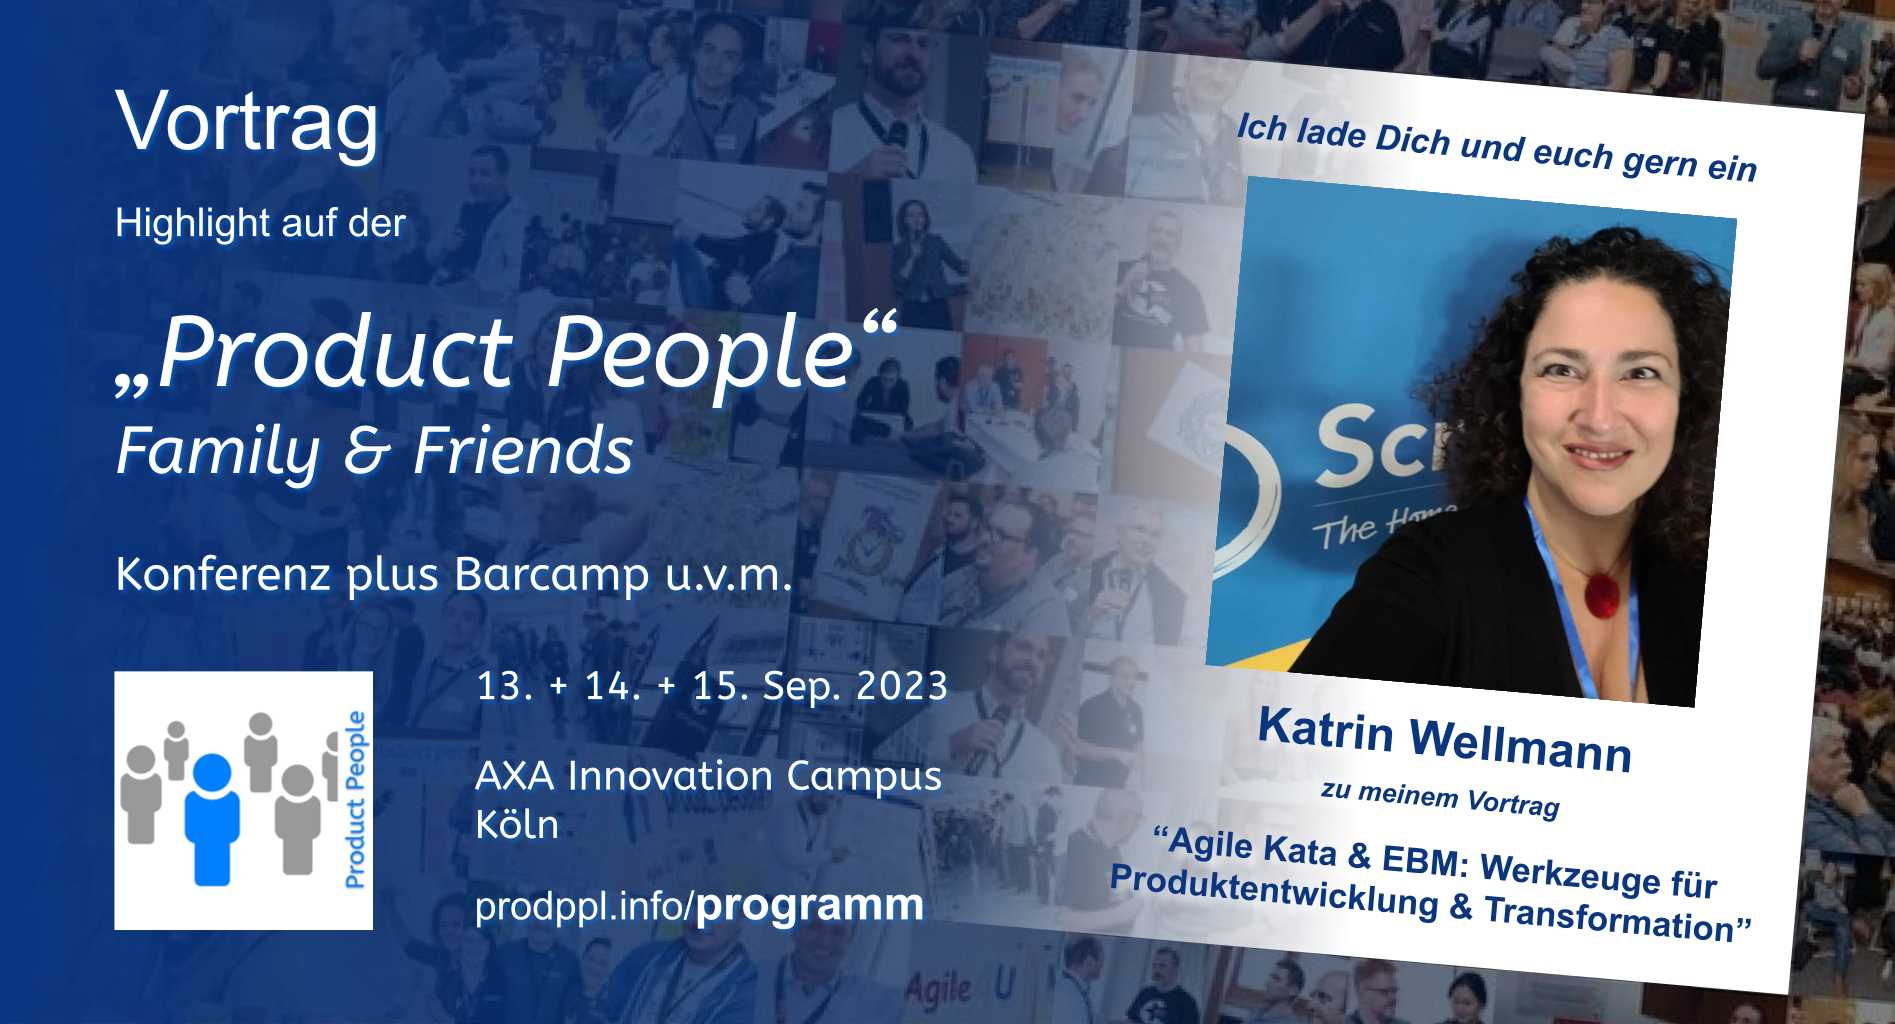 "Agile Kata & EBM: Werkzeuge für Produktentwicklung & Transformation" - M-Vortrag von und mit Katrin Wellmann - auf der 'Product People - Family & Friends' - Konferenz plus Barcamp - Köln 2023